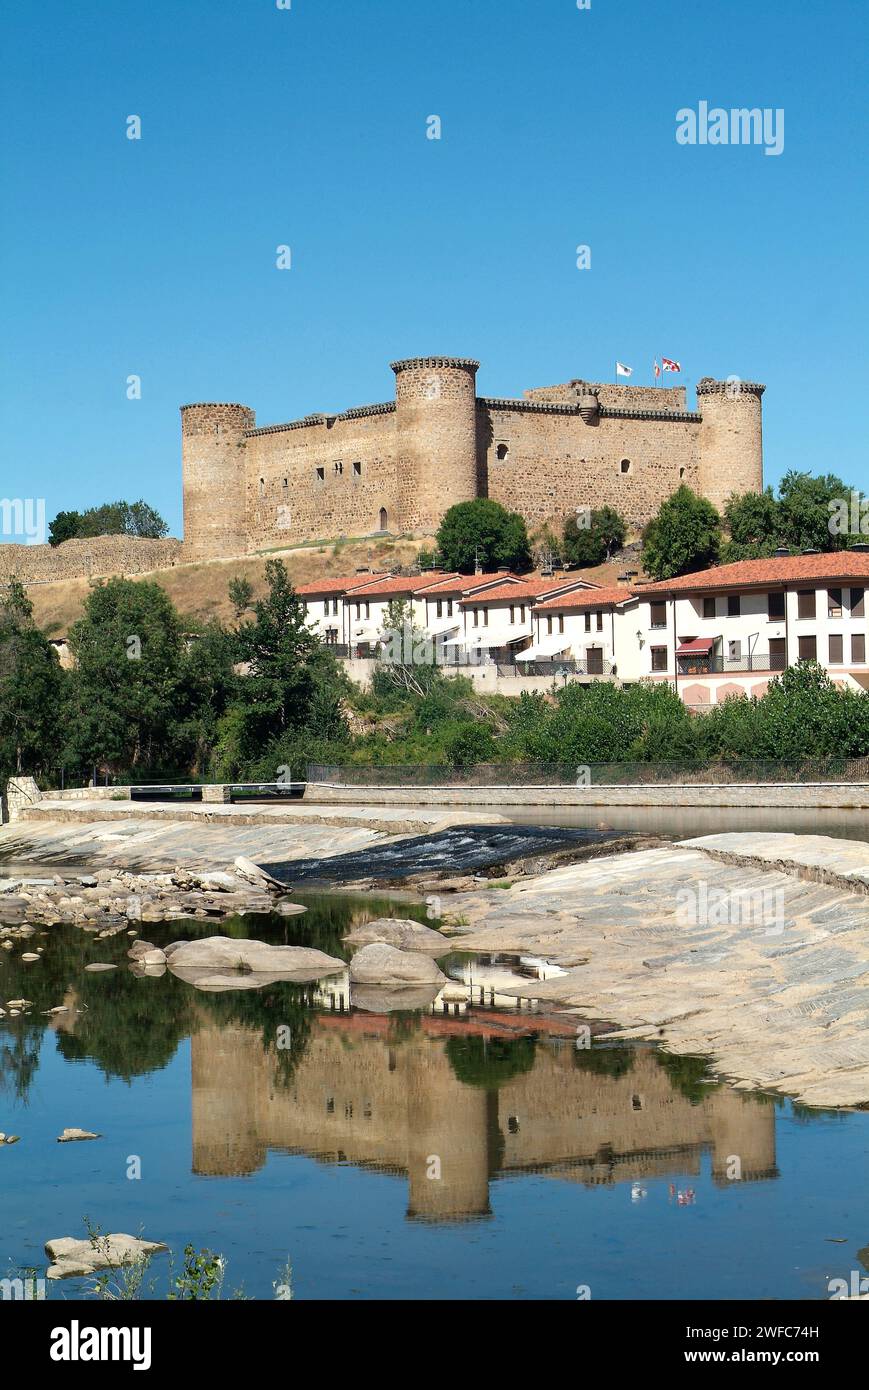 El Barco de Avila, città, castello e fiume Tormes. Provincia di Avila, Castilla y Leon, Spagna. Foto Stock